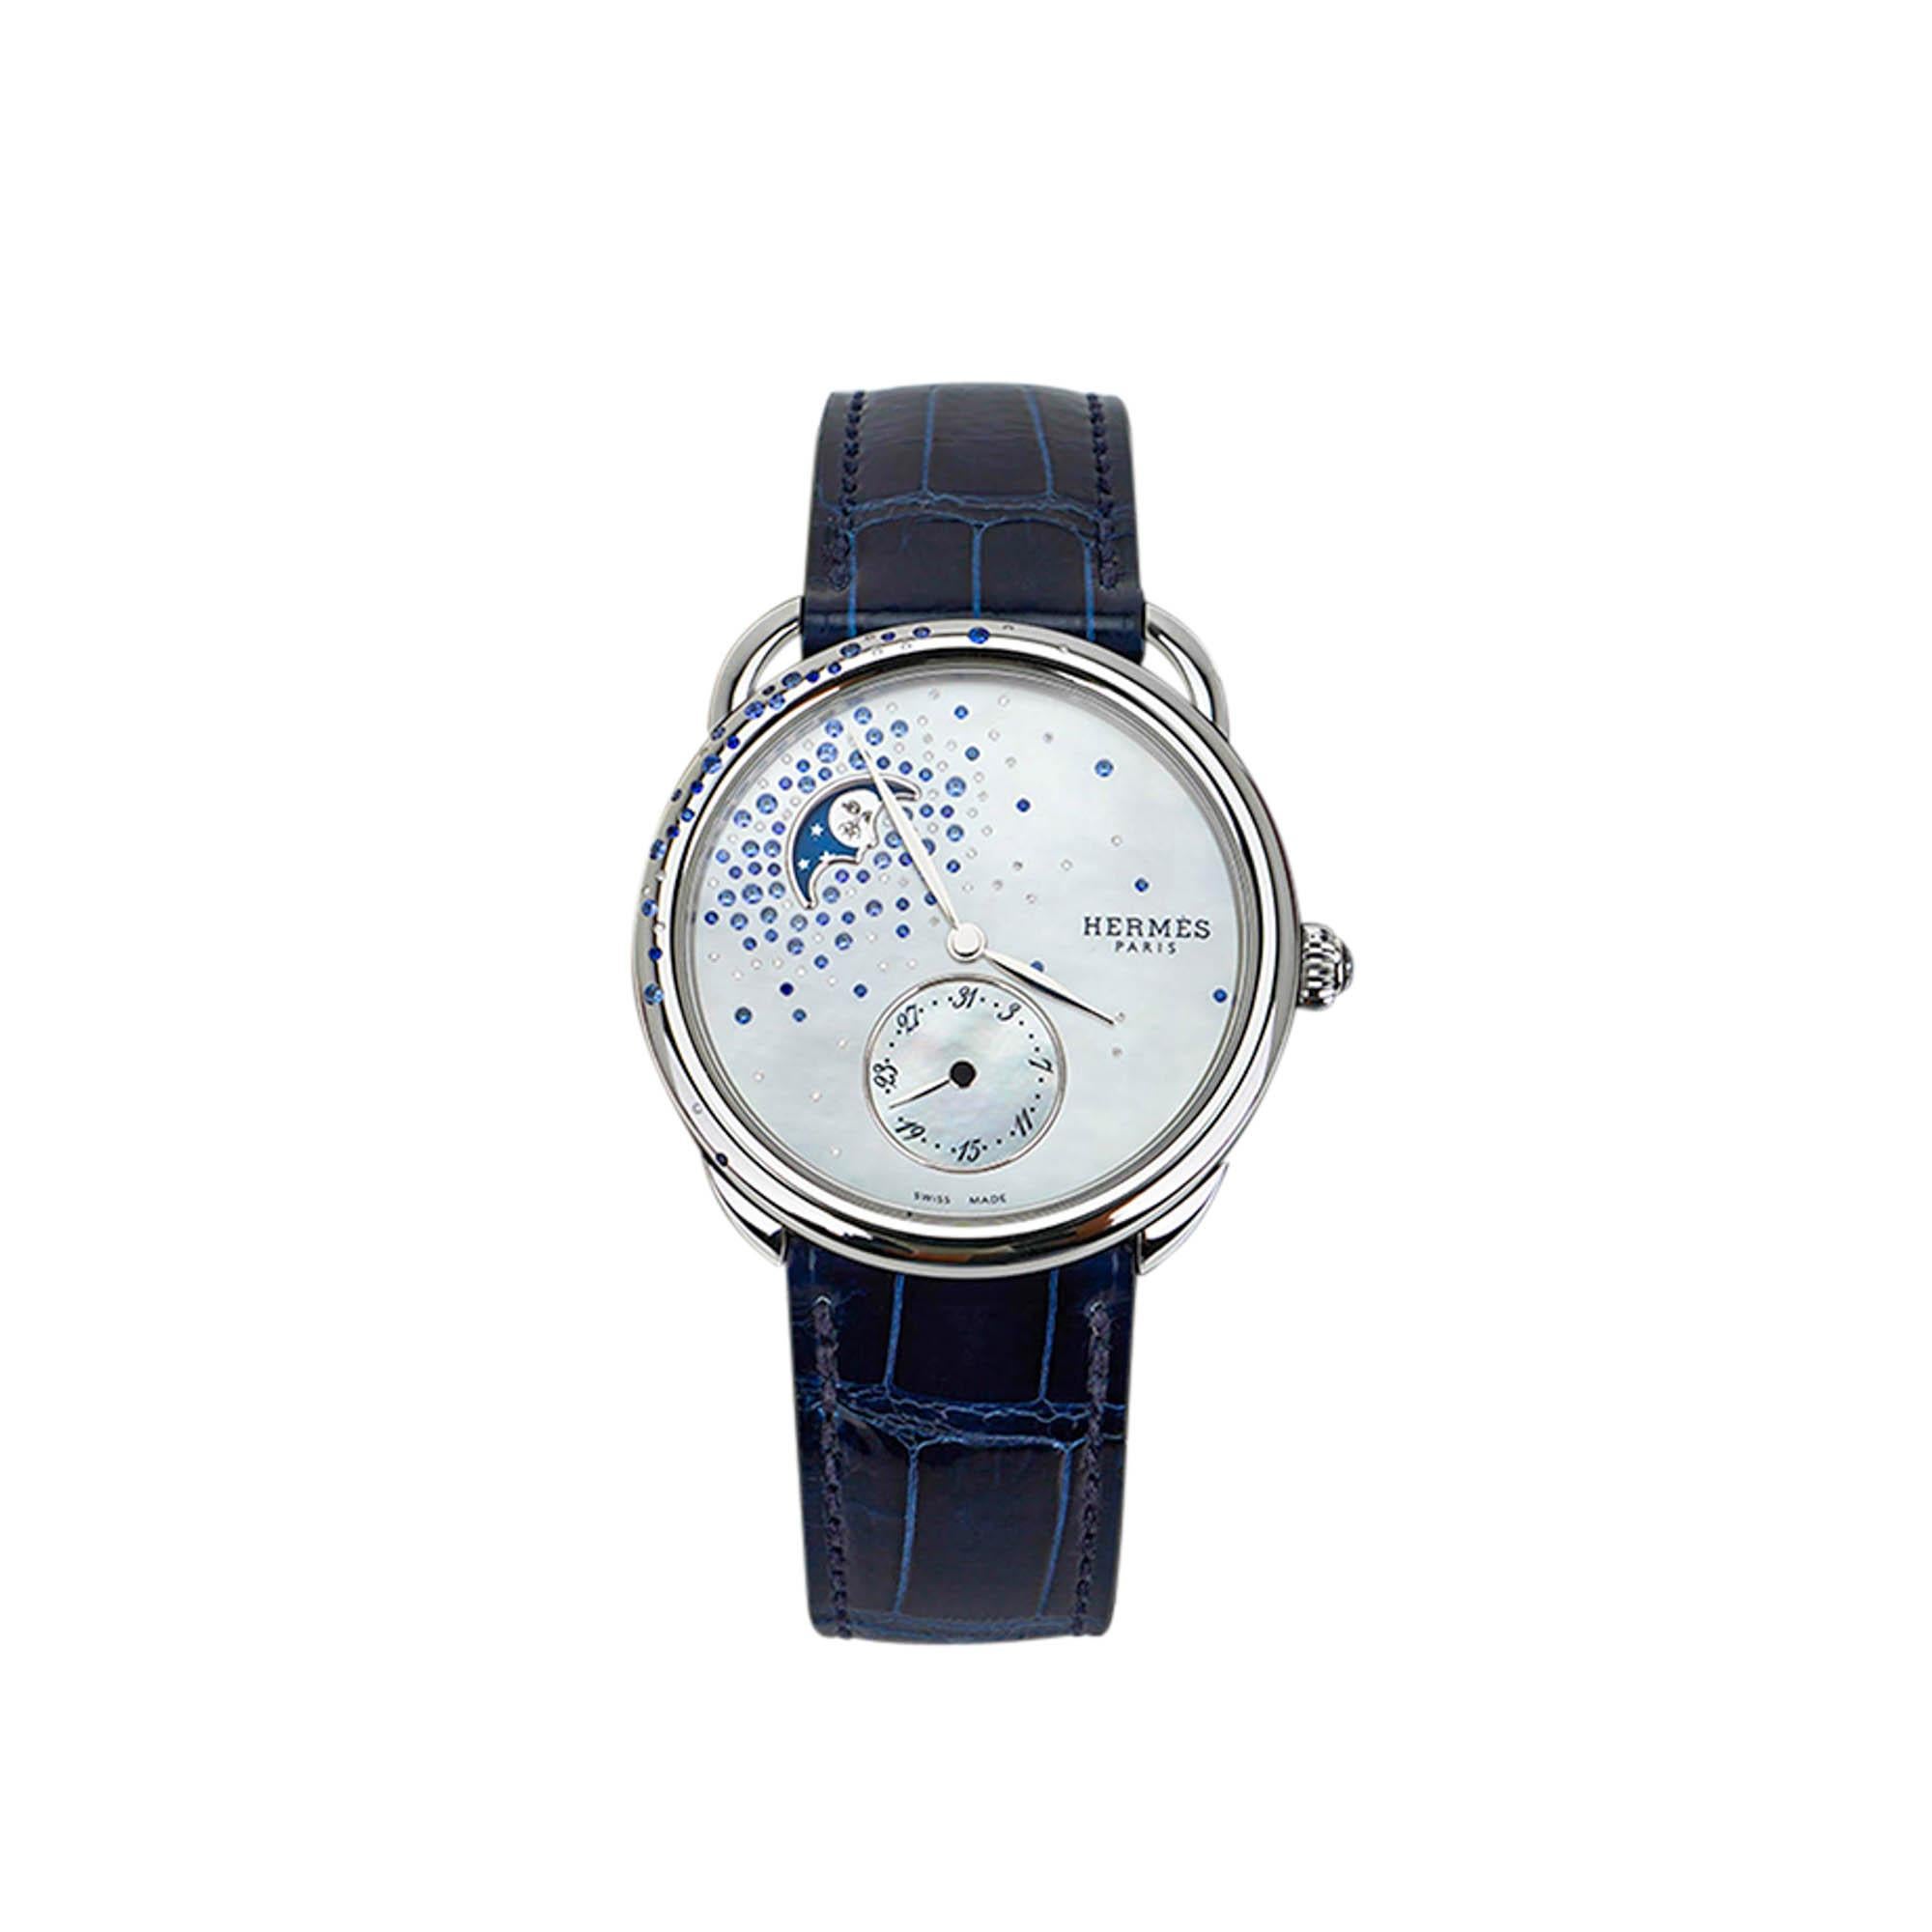 Brilliant Cut Hermes Watch Arceau Petite Lune Large Model 38 mm Moon Phase Sapphires Diamonds For Sale